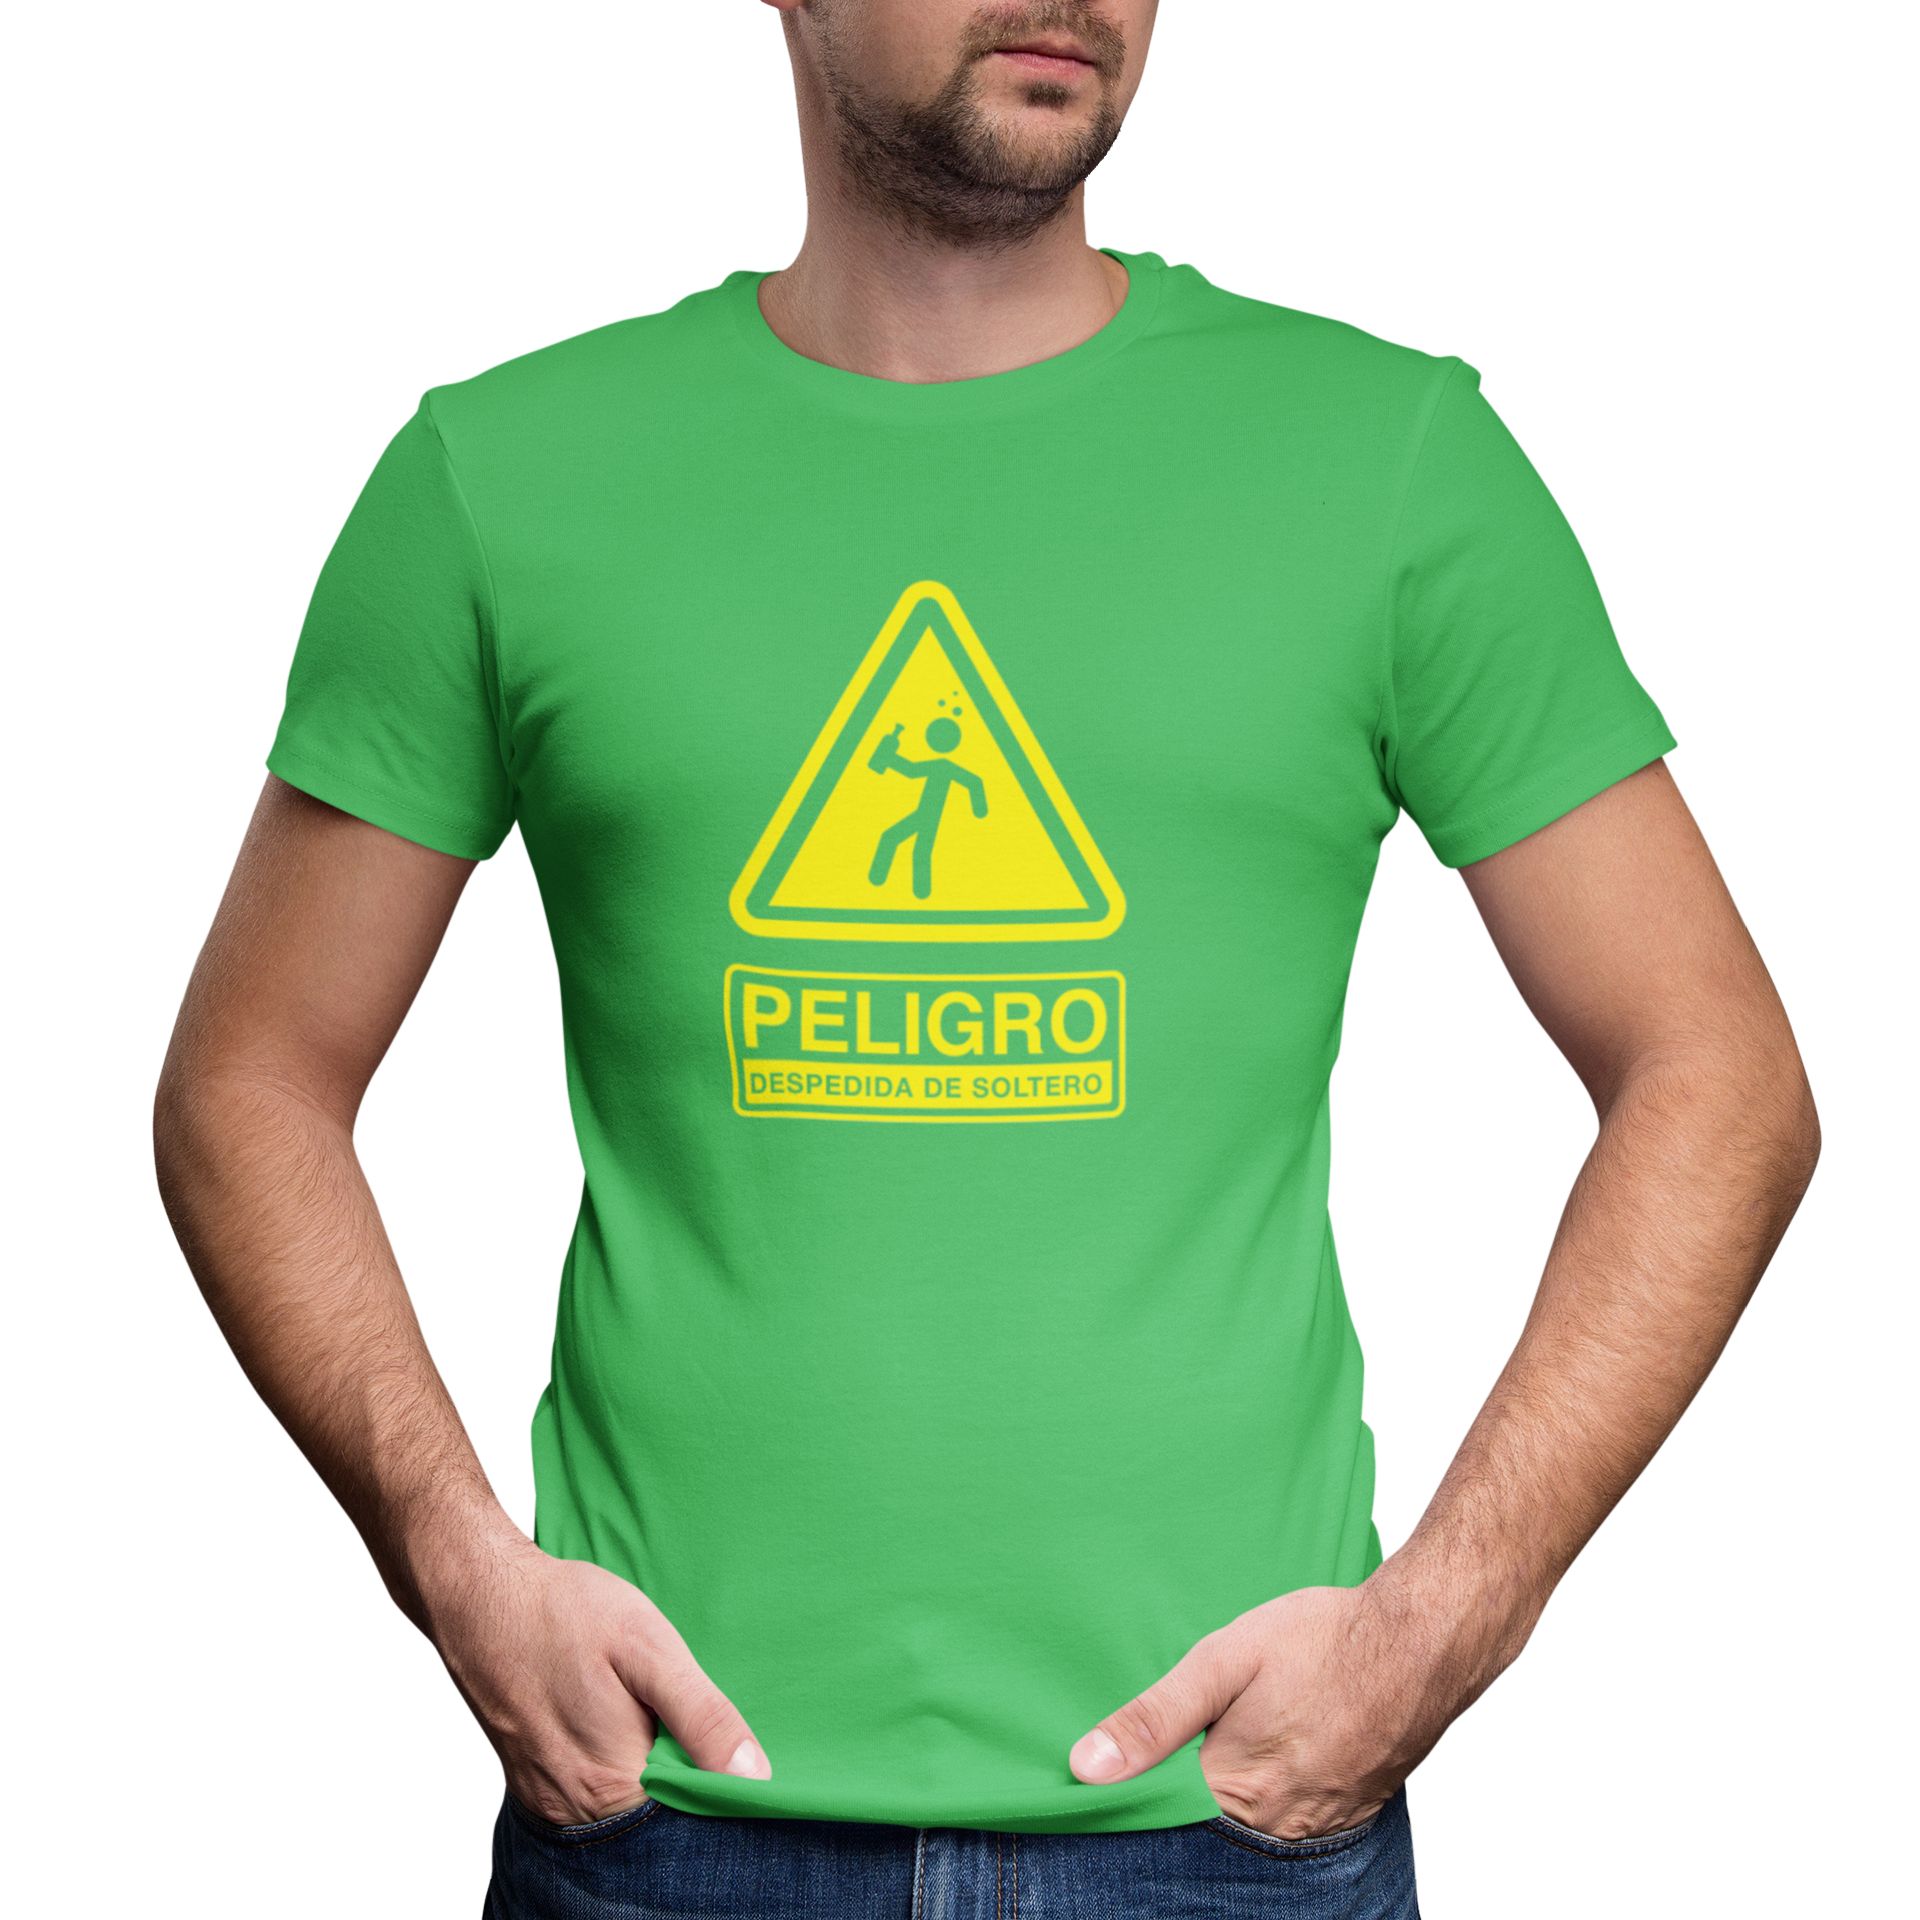 Camiseta peligro despedida soltera - Camisetas Para